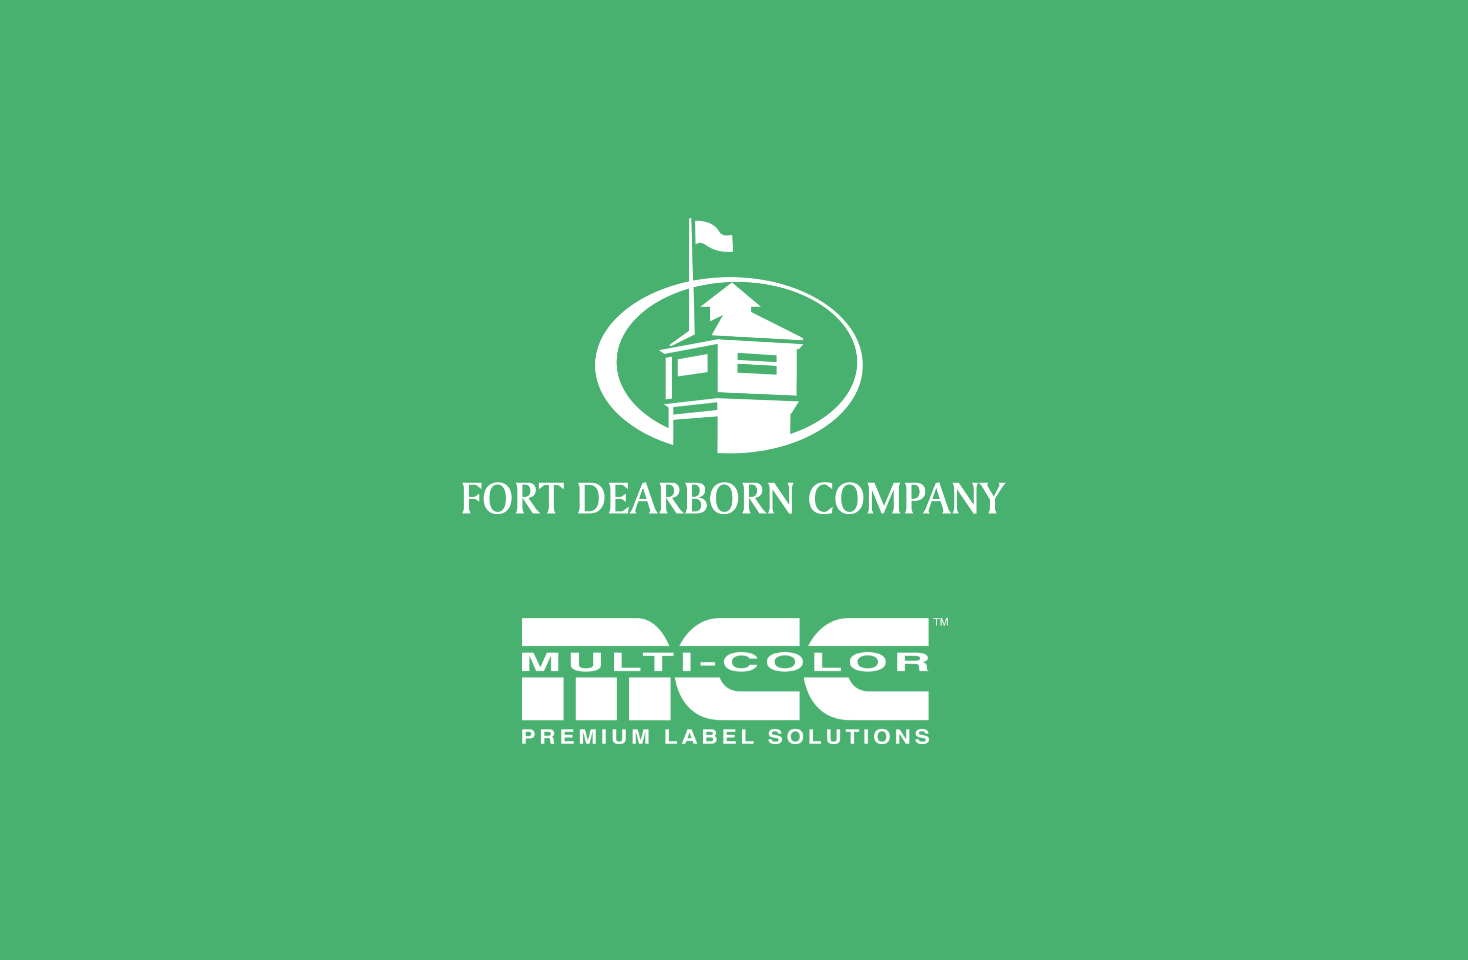 Image of CD&R completa la combinación de Fort Dearborn y Multi-Color Corporation para crear un líder mundial en la industria de etiquetas de primera calidad